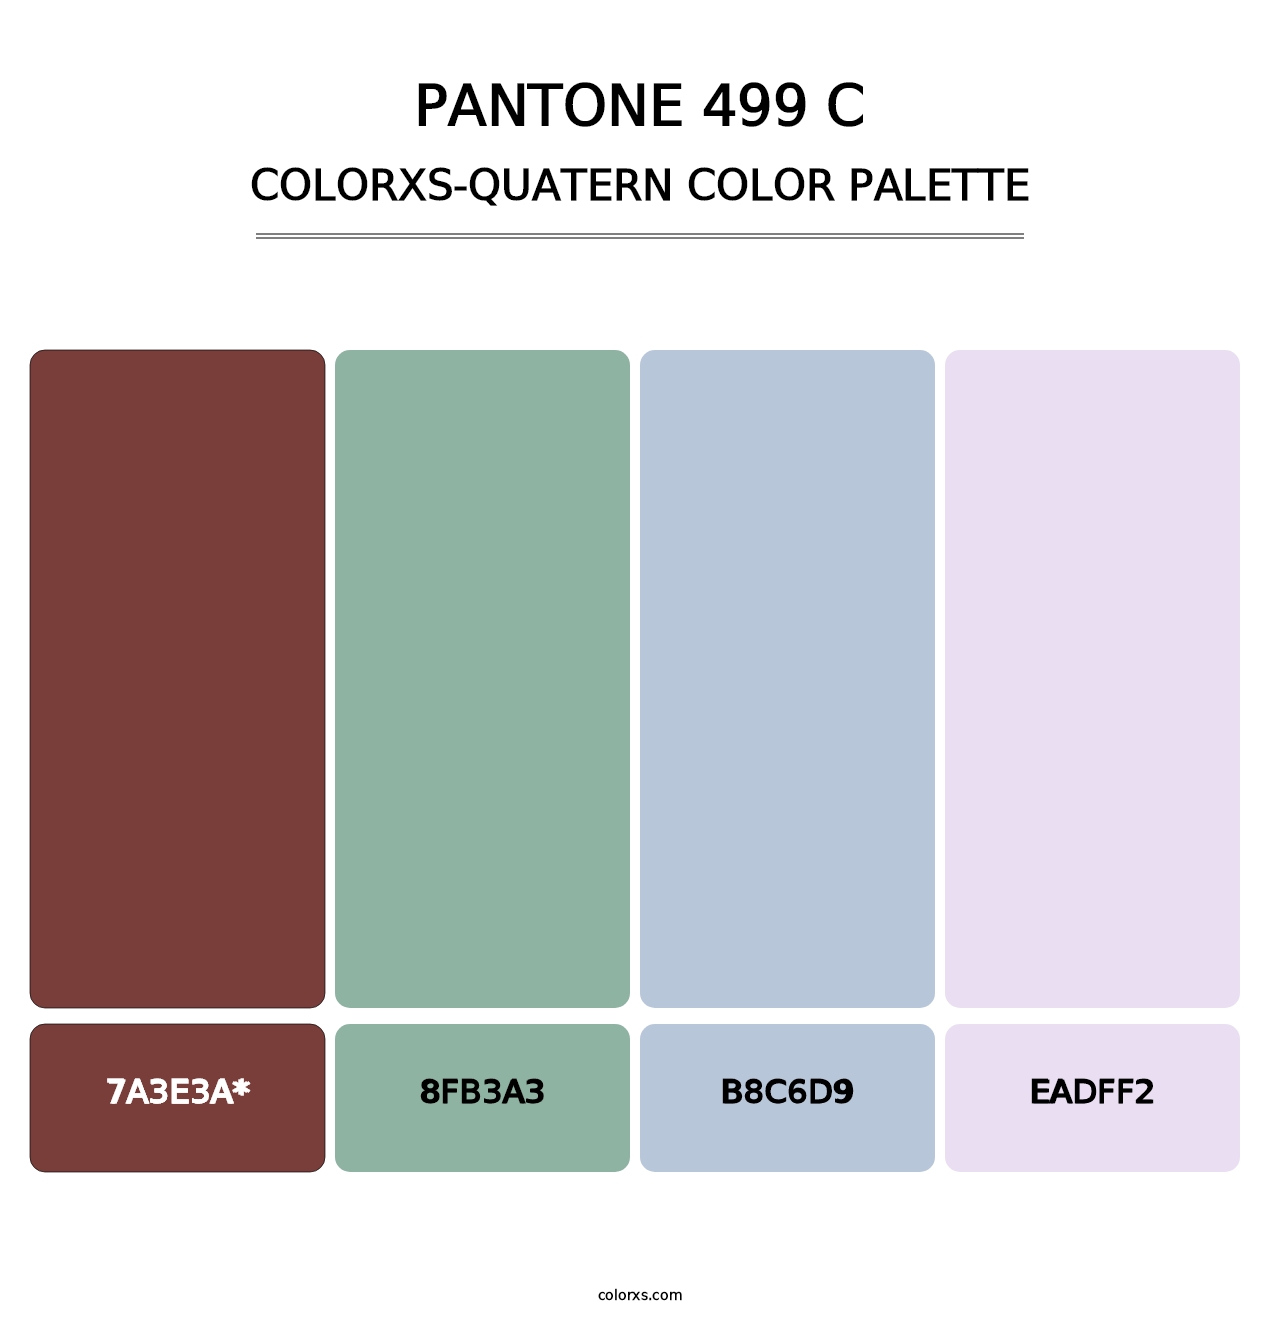 PANTONE 499 C - Colorxs Quatern Palette